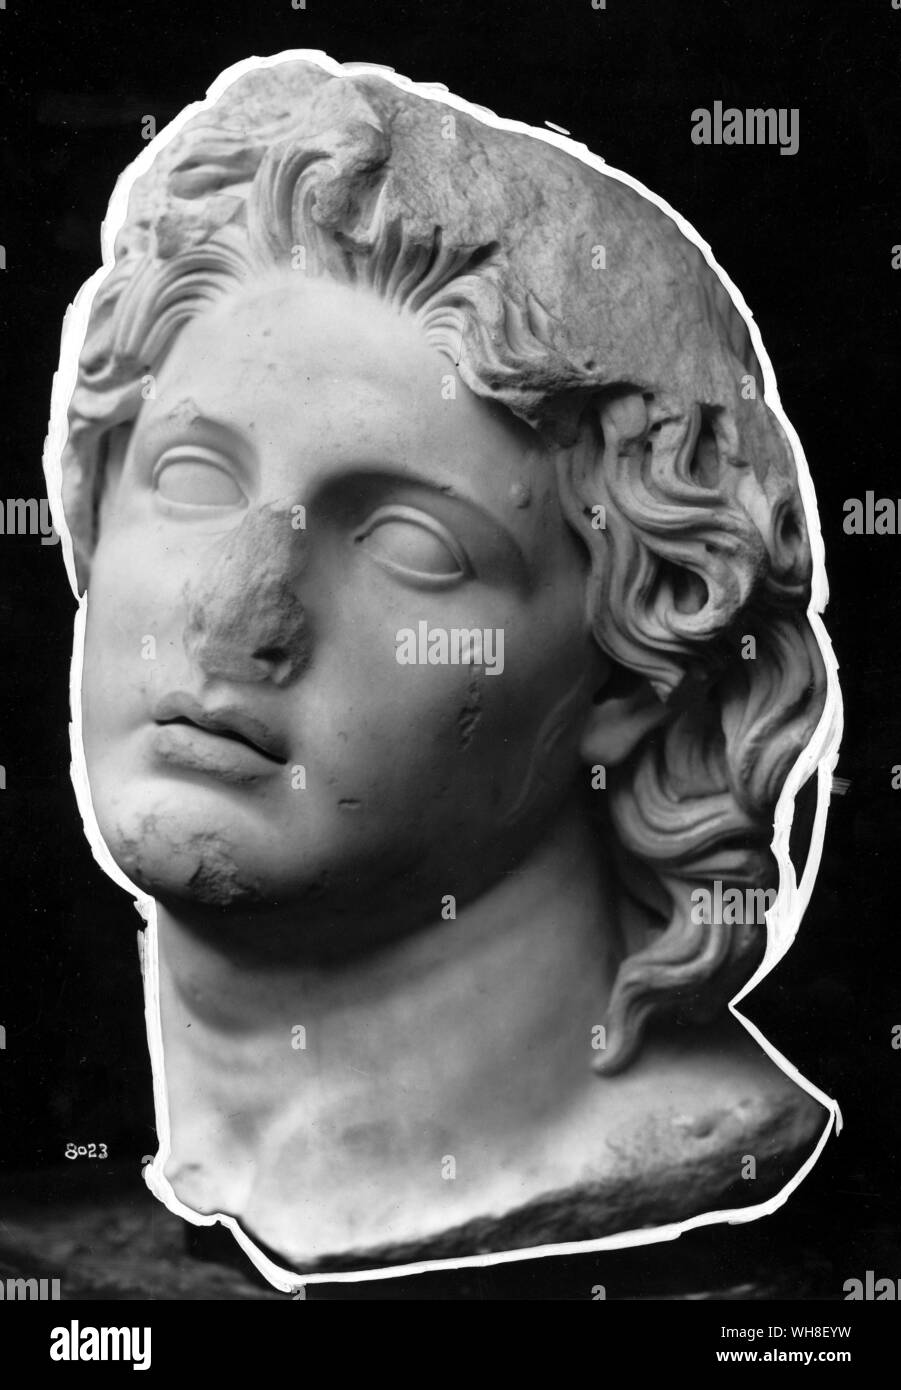 Kopf von Alexander dem Großen (356 v. Chr.-323 v. Chr.), König von Makedonien 336-323 v. Chr.. Er gilt als einer der erfolgreichsten Kommandeure in der Geschichte der Welt, erobert die meisten der bekannten Welt vor seinem Tod. Die Natur von Alexander, von Mary Renault. Stockfoto